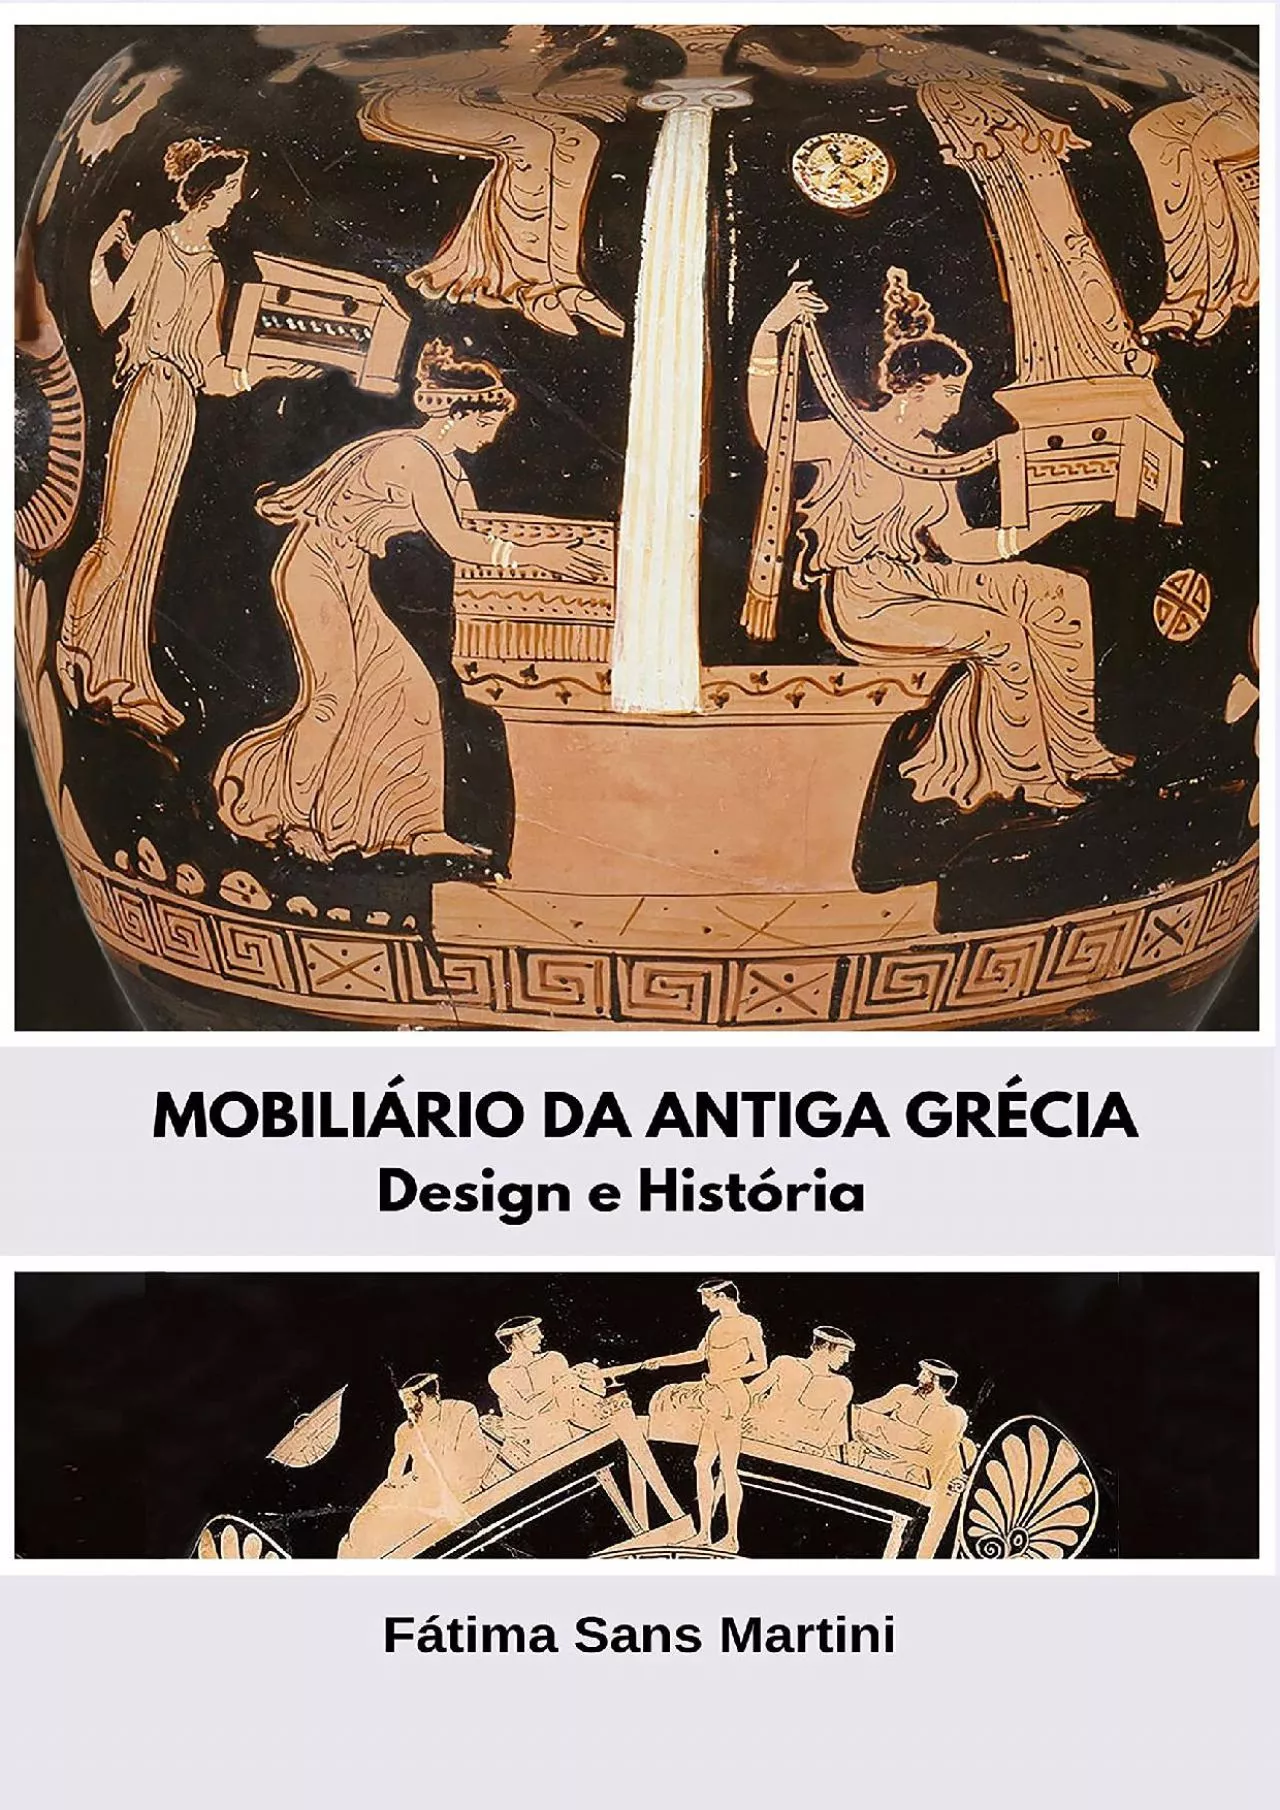 [DOWNLOAD] MOBILIÁRIO DA ANTIGA GRÉCIA: Design e História HISTÓRIA DO MOBILIÁRIO